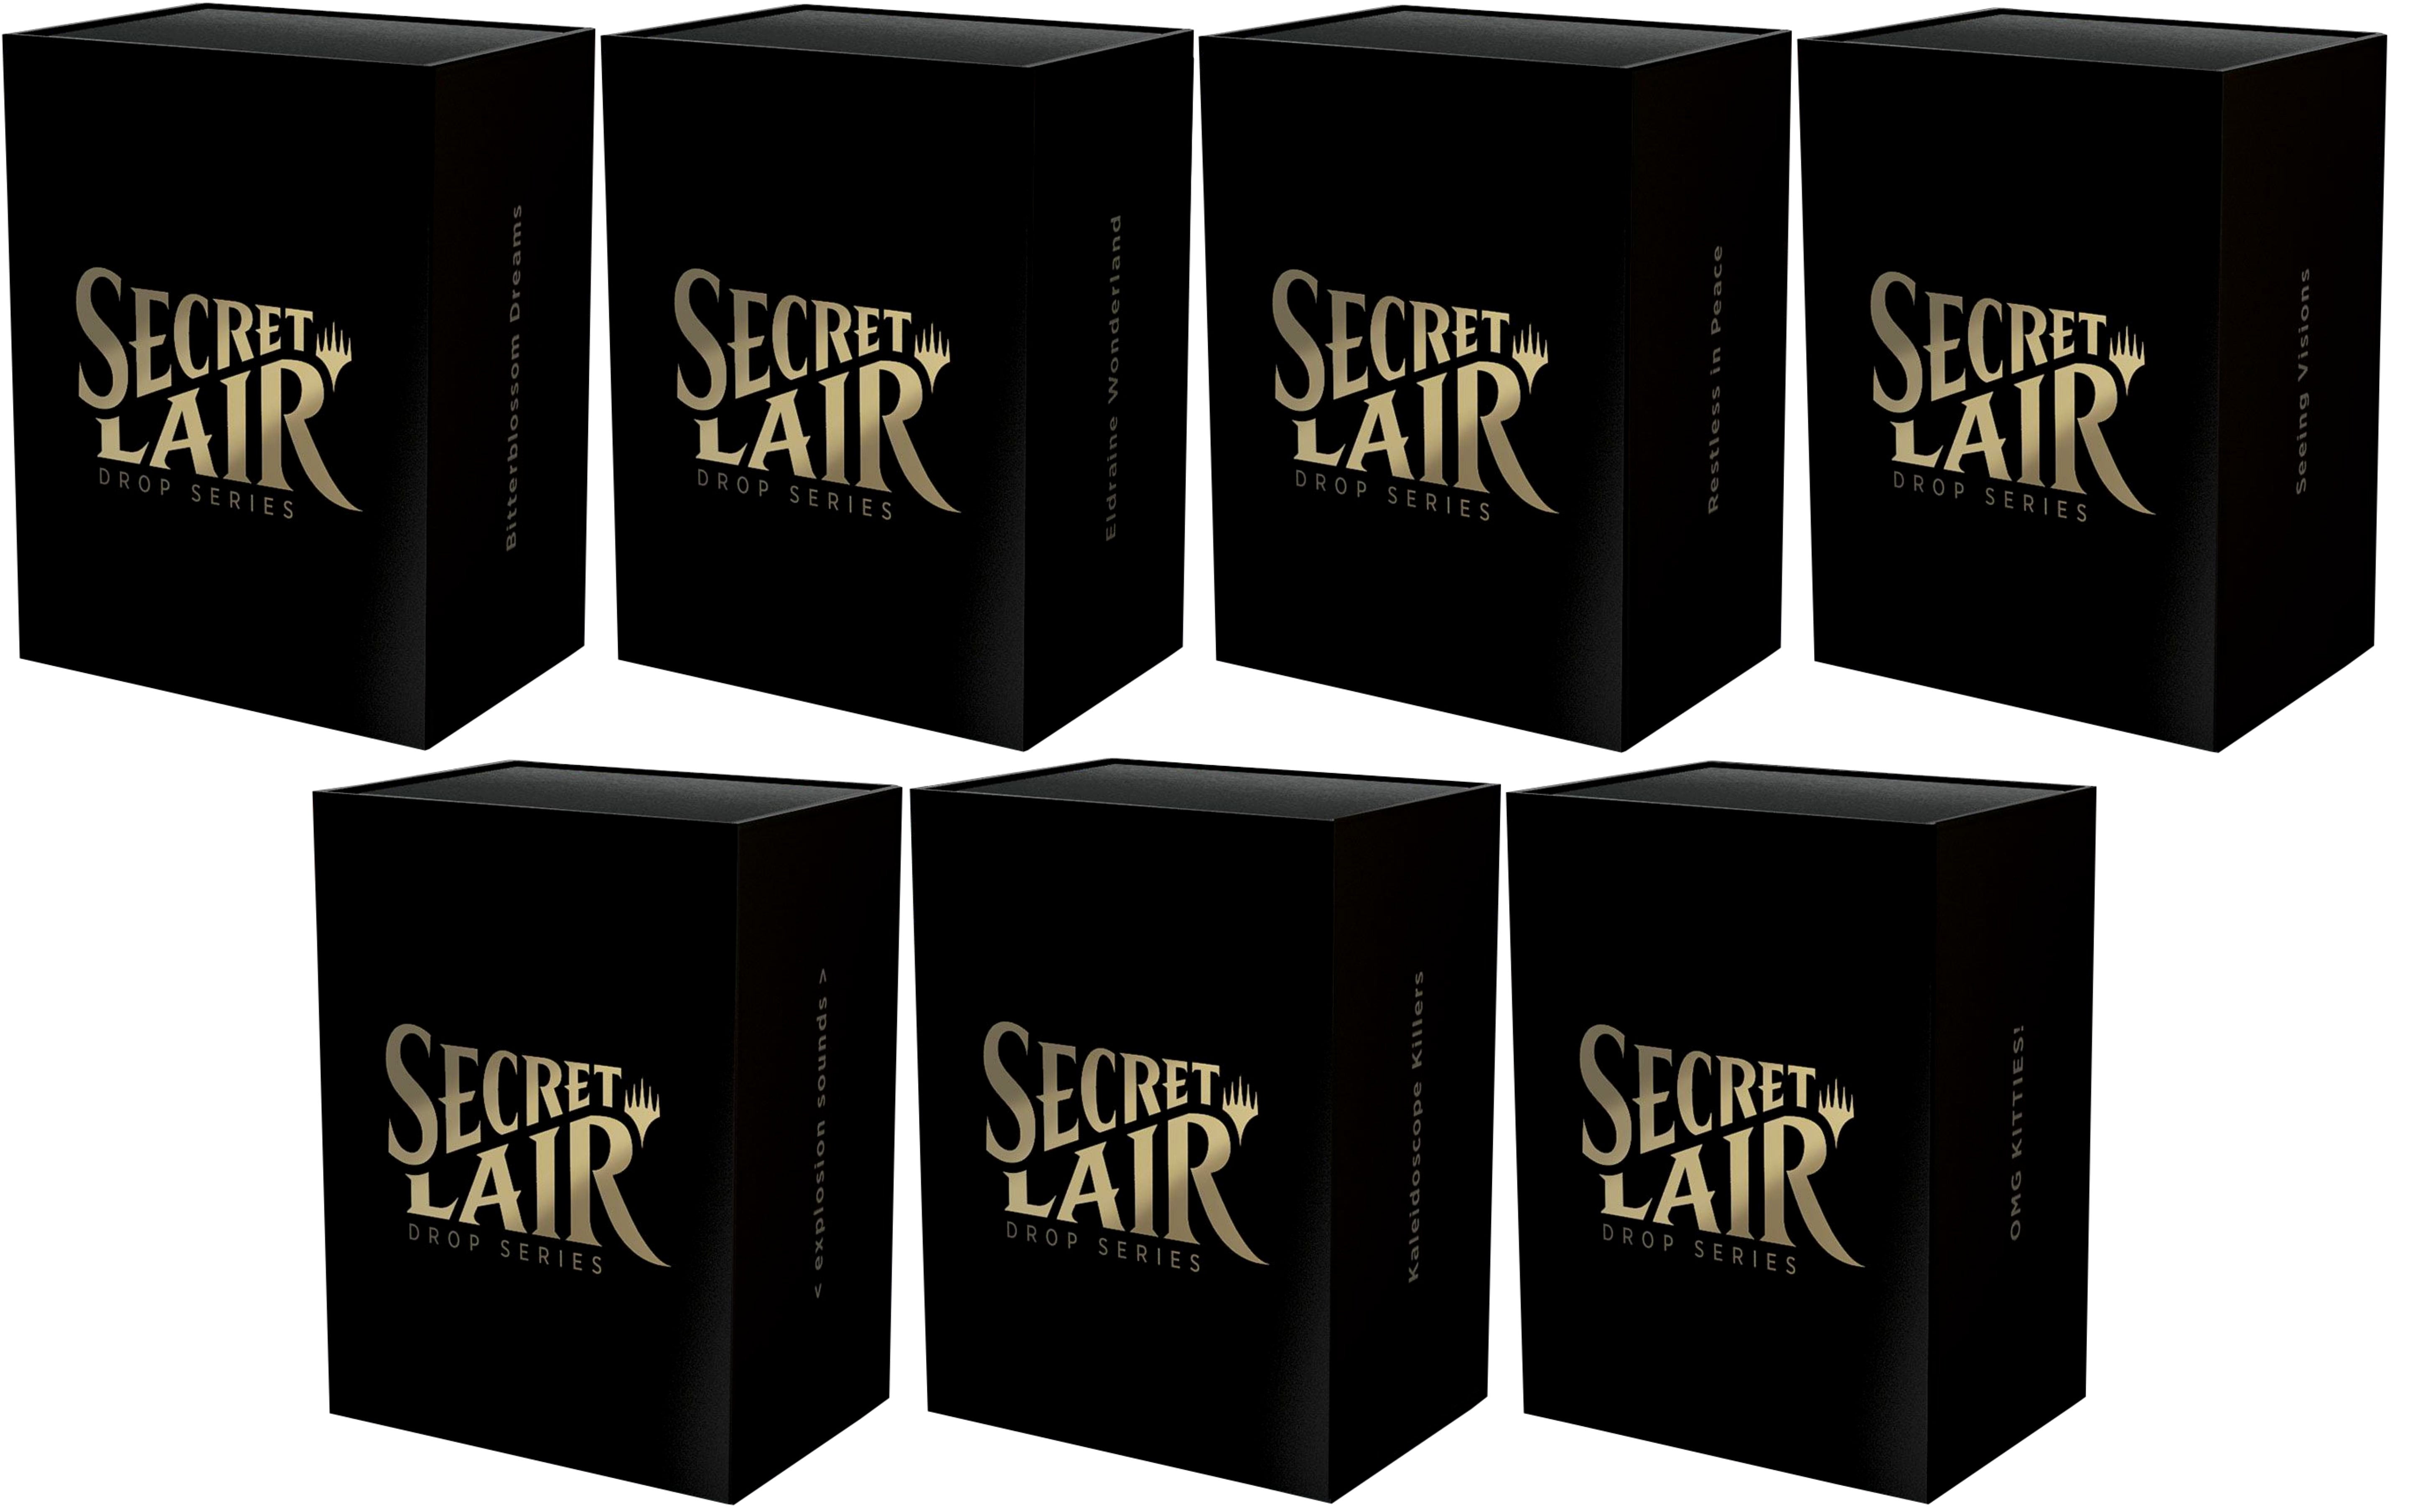 Secret Lair: Drop Series - Secret Lair Bundle | Devastation Store